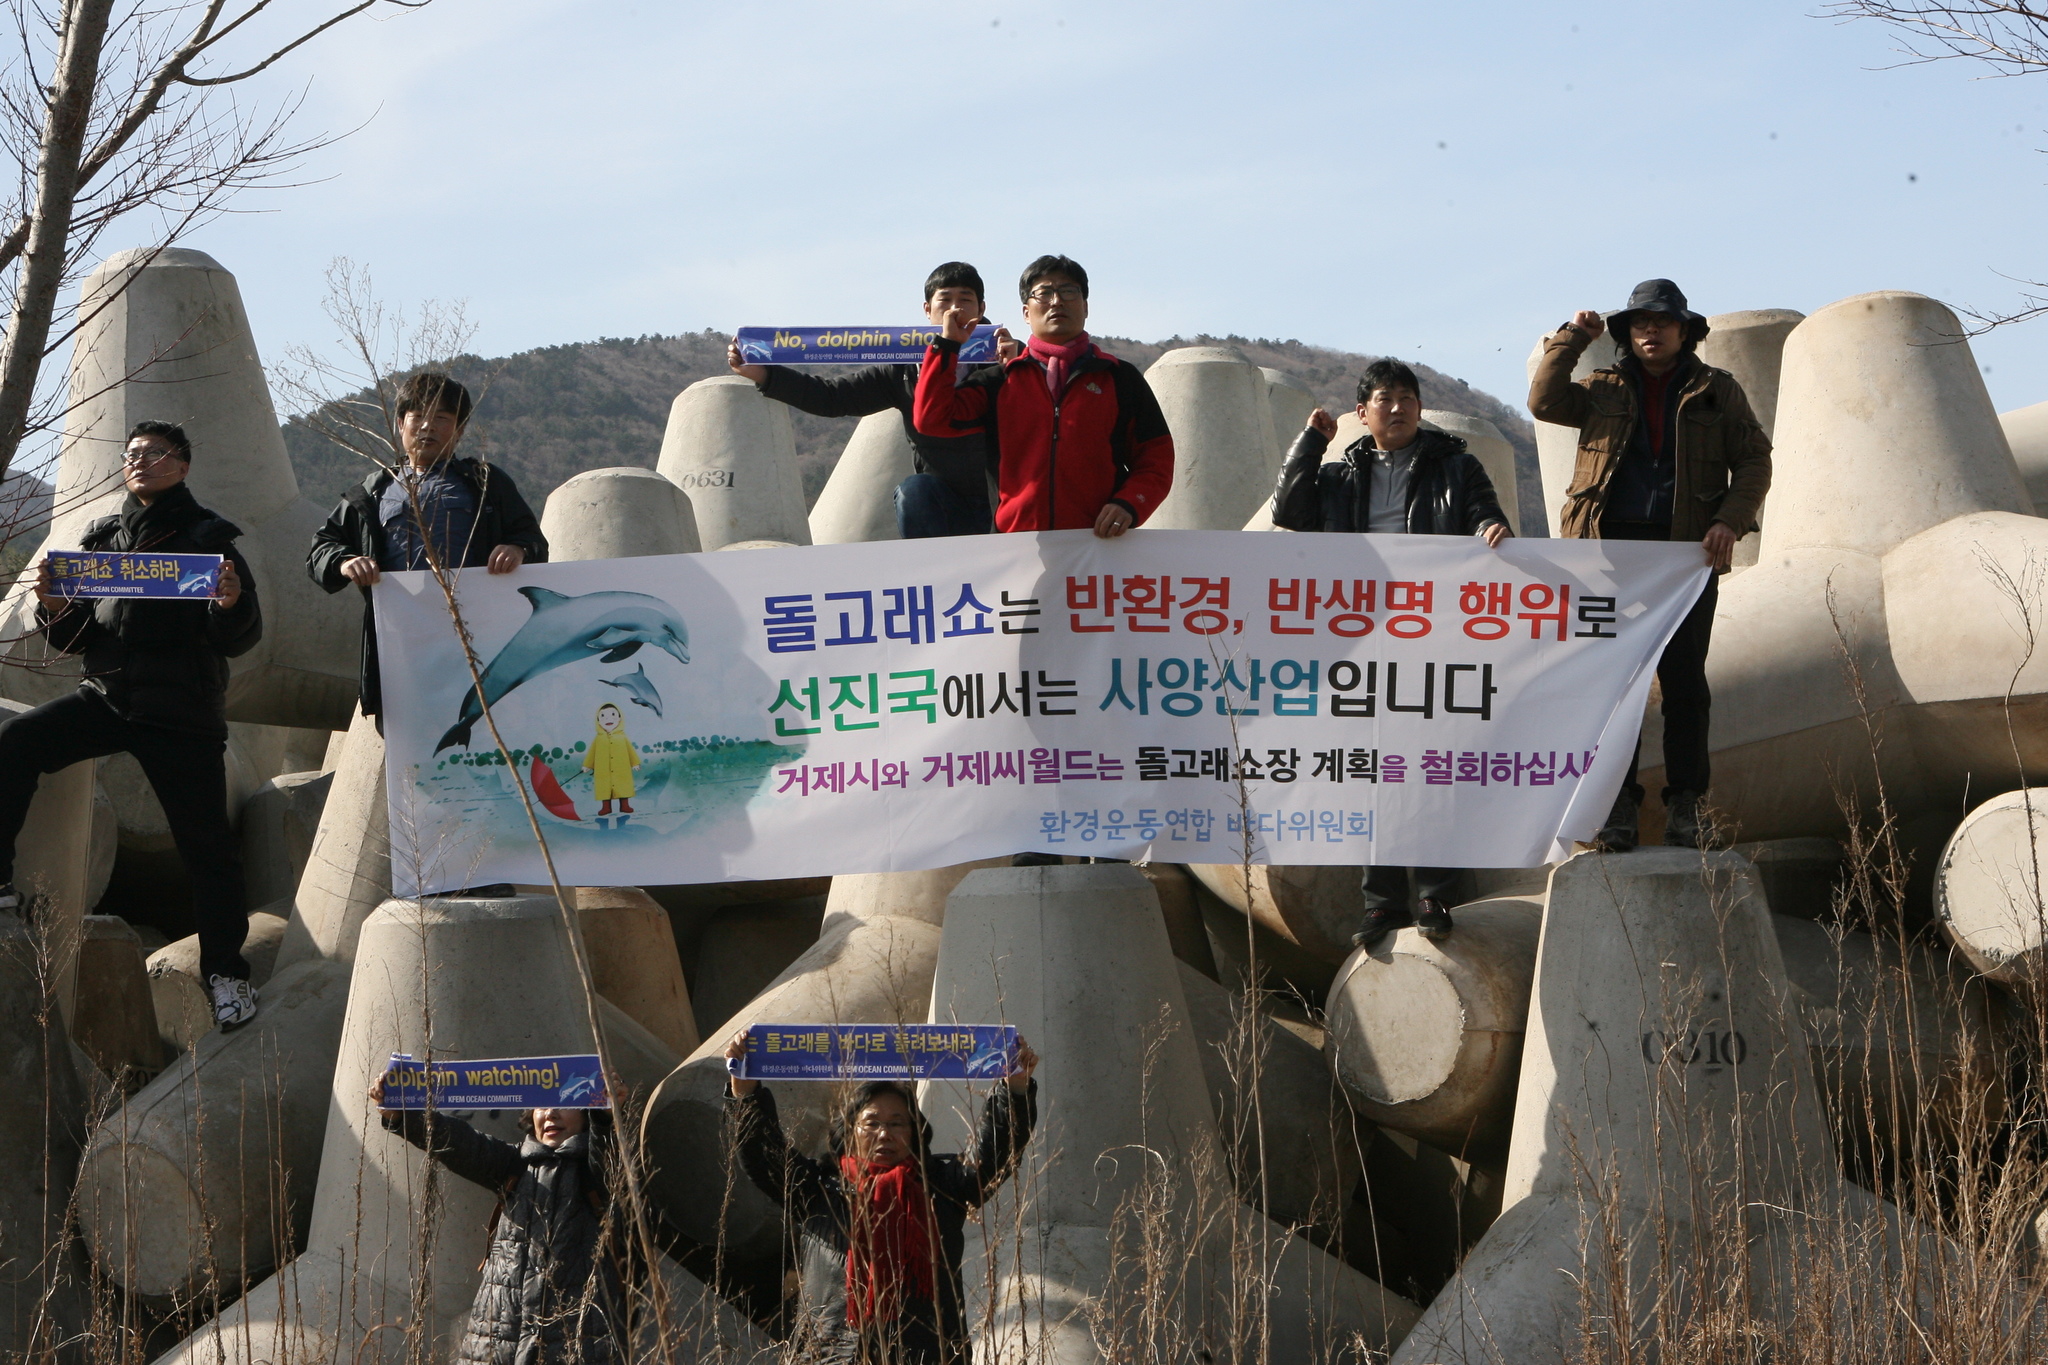 환경운동연합 바다위원회 활동가들이 지난 2013년 2월 22일 개장을 앞둔 거제씨월드 건설현장에서 개장 반대 캠페인을 진행하고 있다. [환경운동연합]